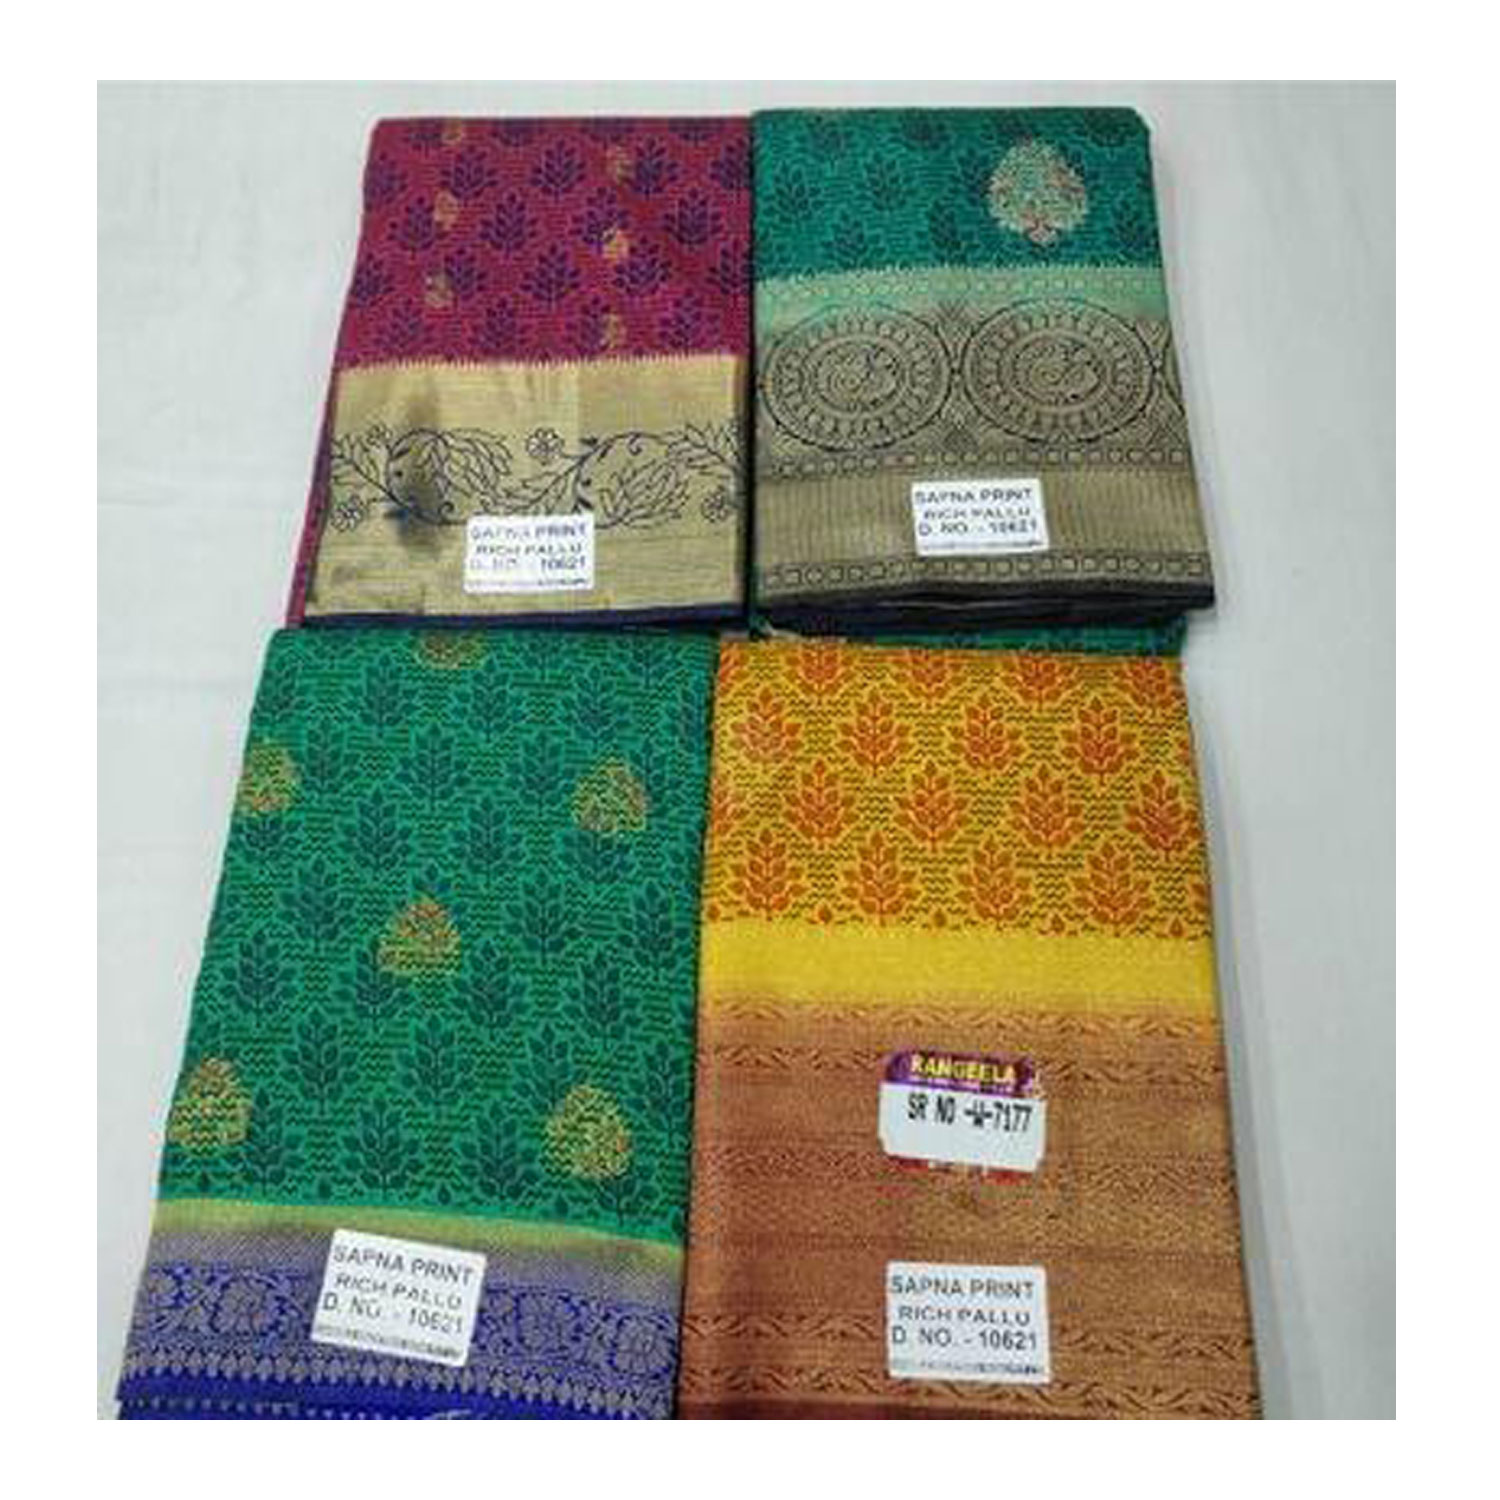  Women's Silk Cotton Weaving Work Sapna Print Saree |D.NO - W-7177| Pack of 4